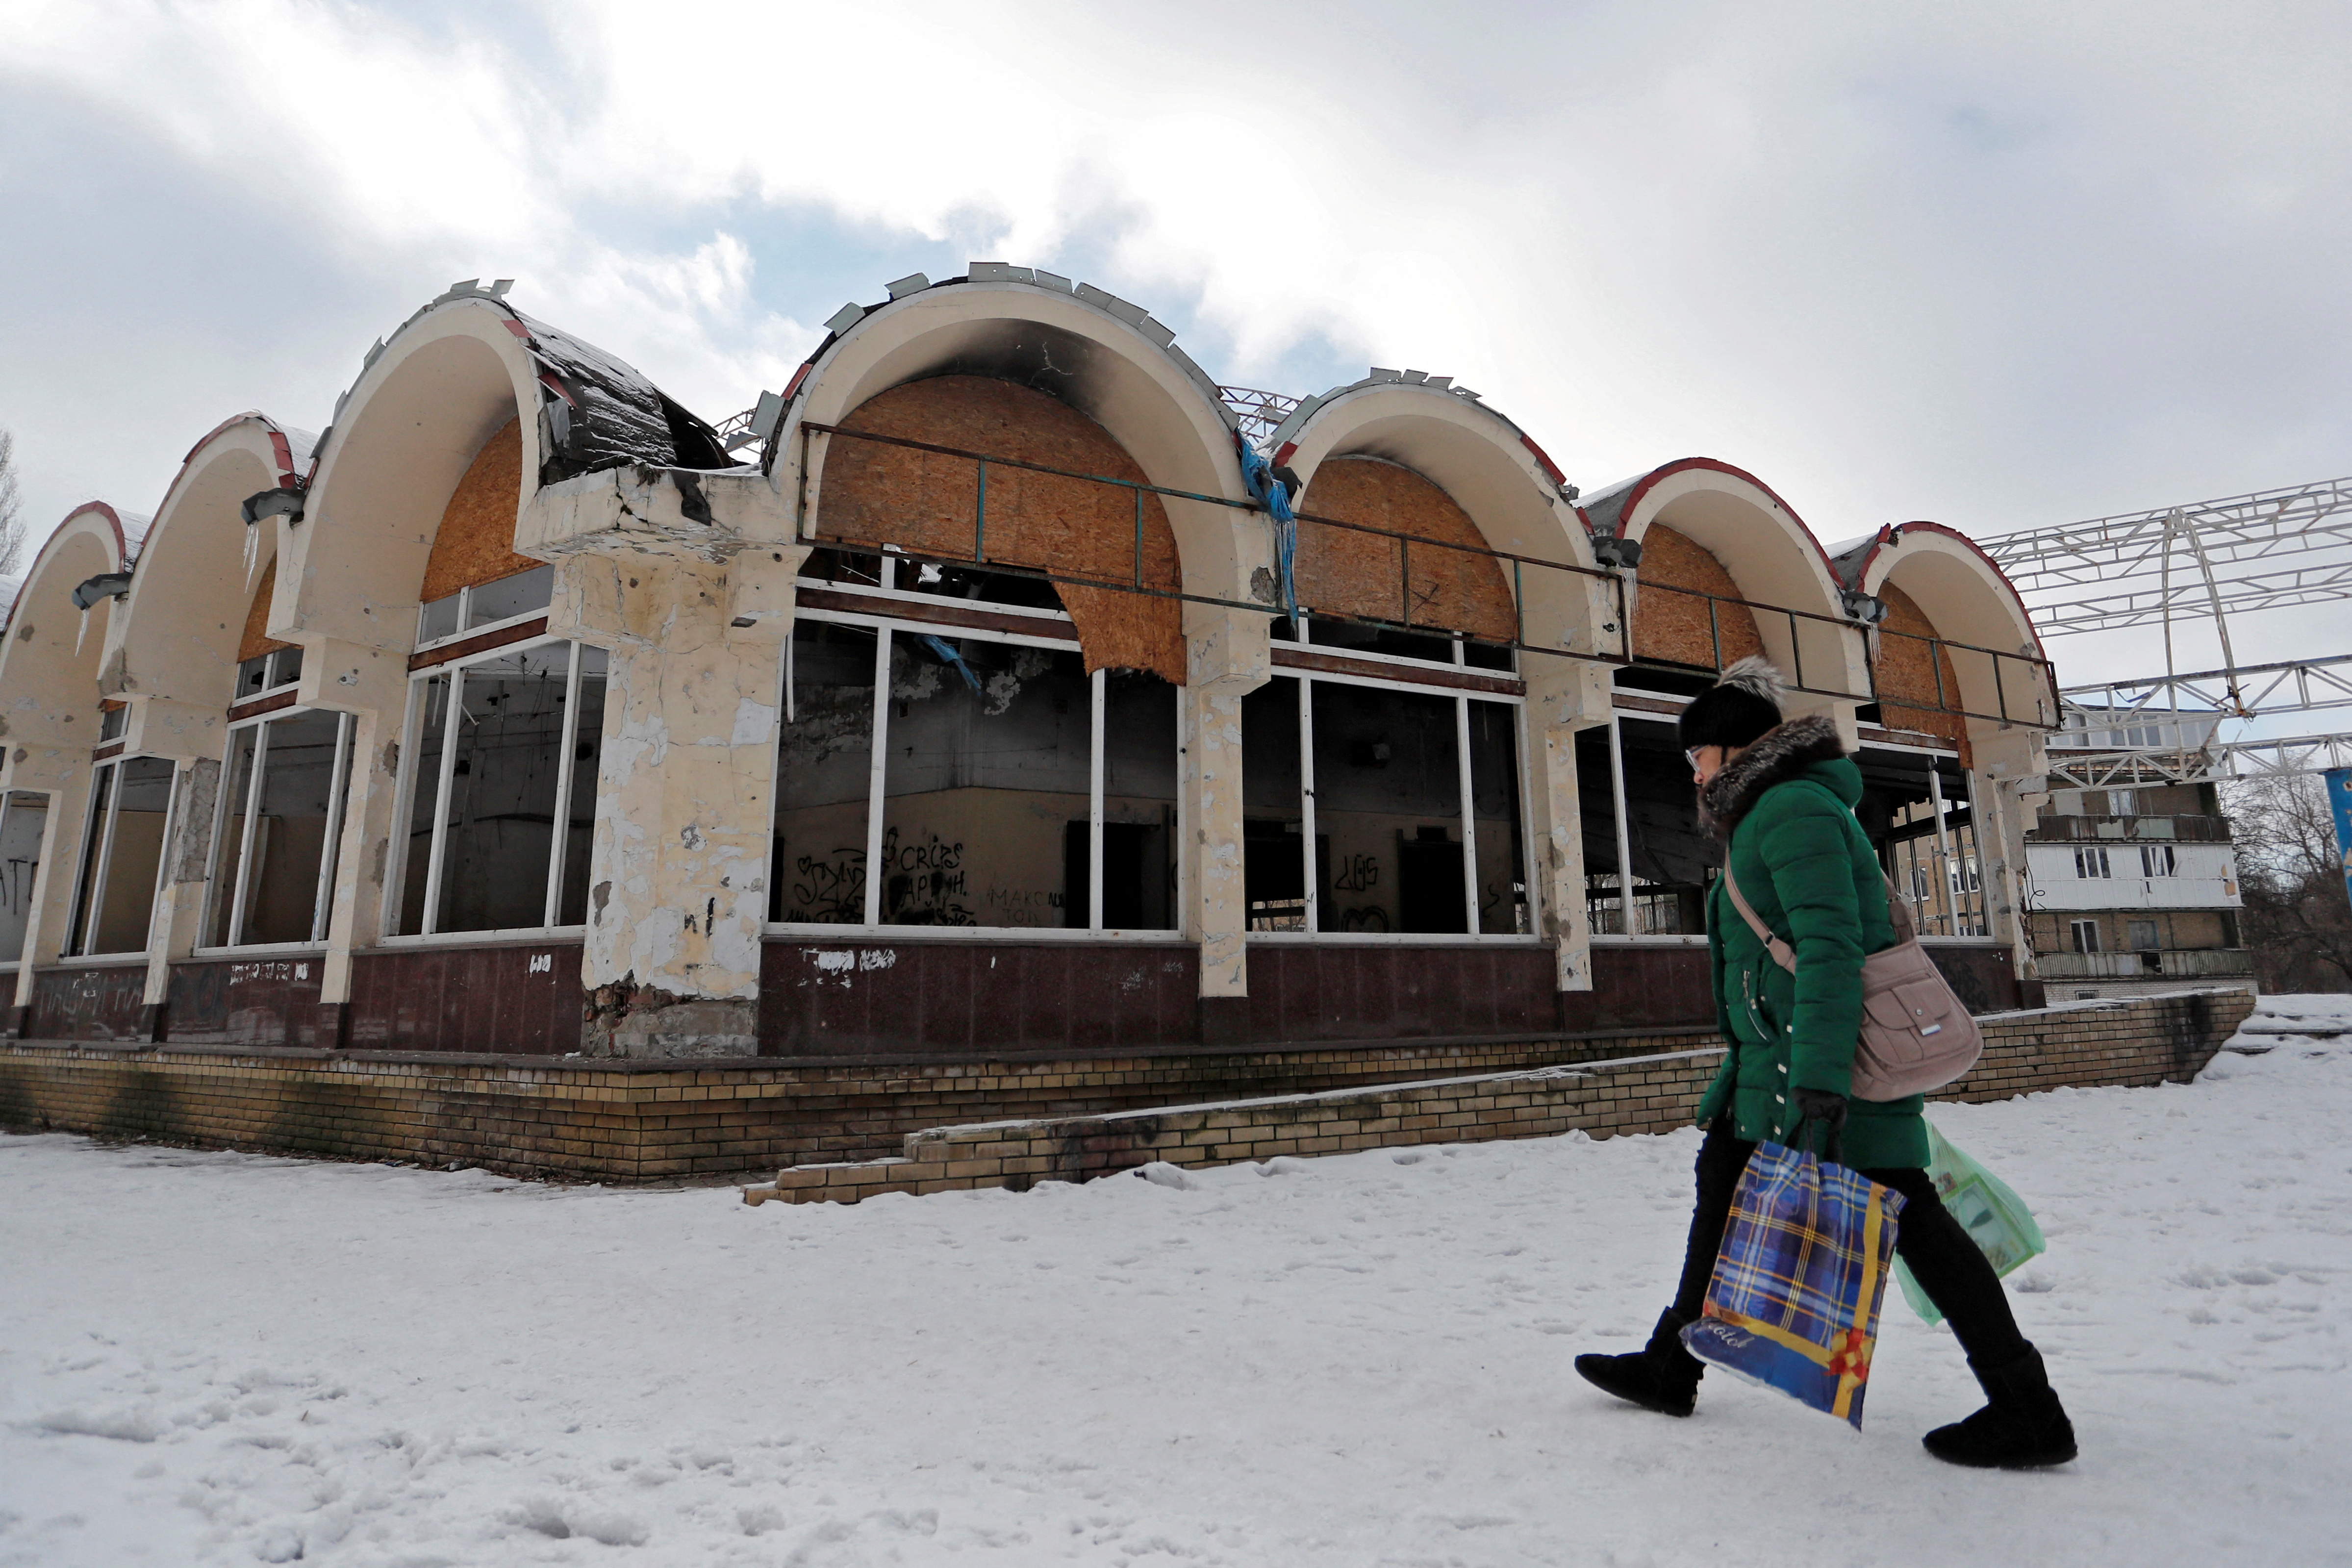 Una mujer pasa frente a una tienda dañada en la ciudad de Donetsk, Ucrania, controlada por los rebeldes, el 5 de febrero de 2022. Foto tomada el 5 de febrero de 2022. (REUTERS/Alexander Ermochenko/Foto de archivo)